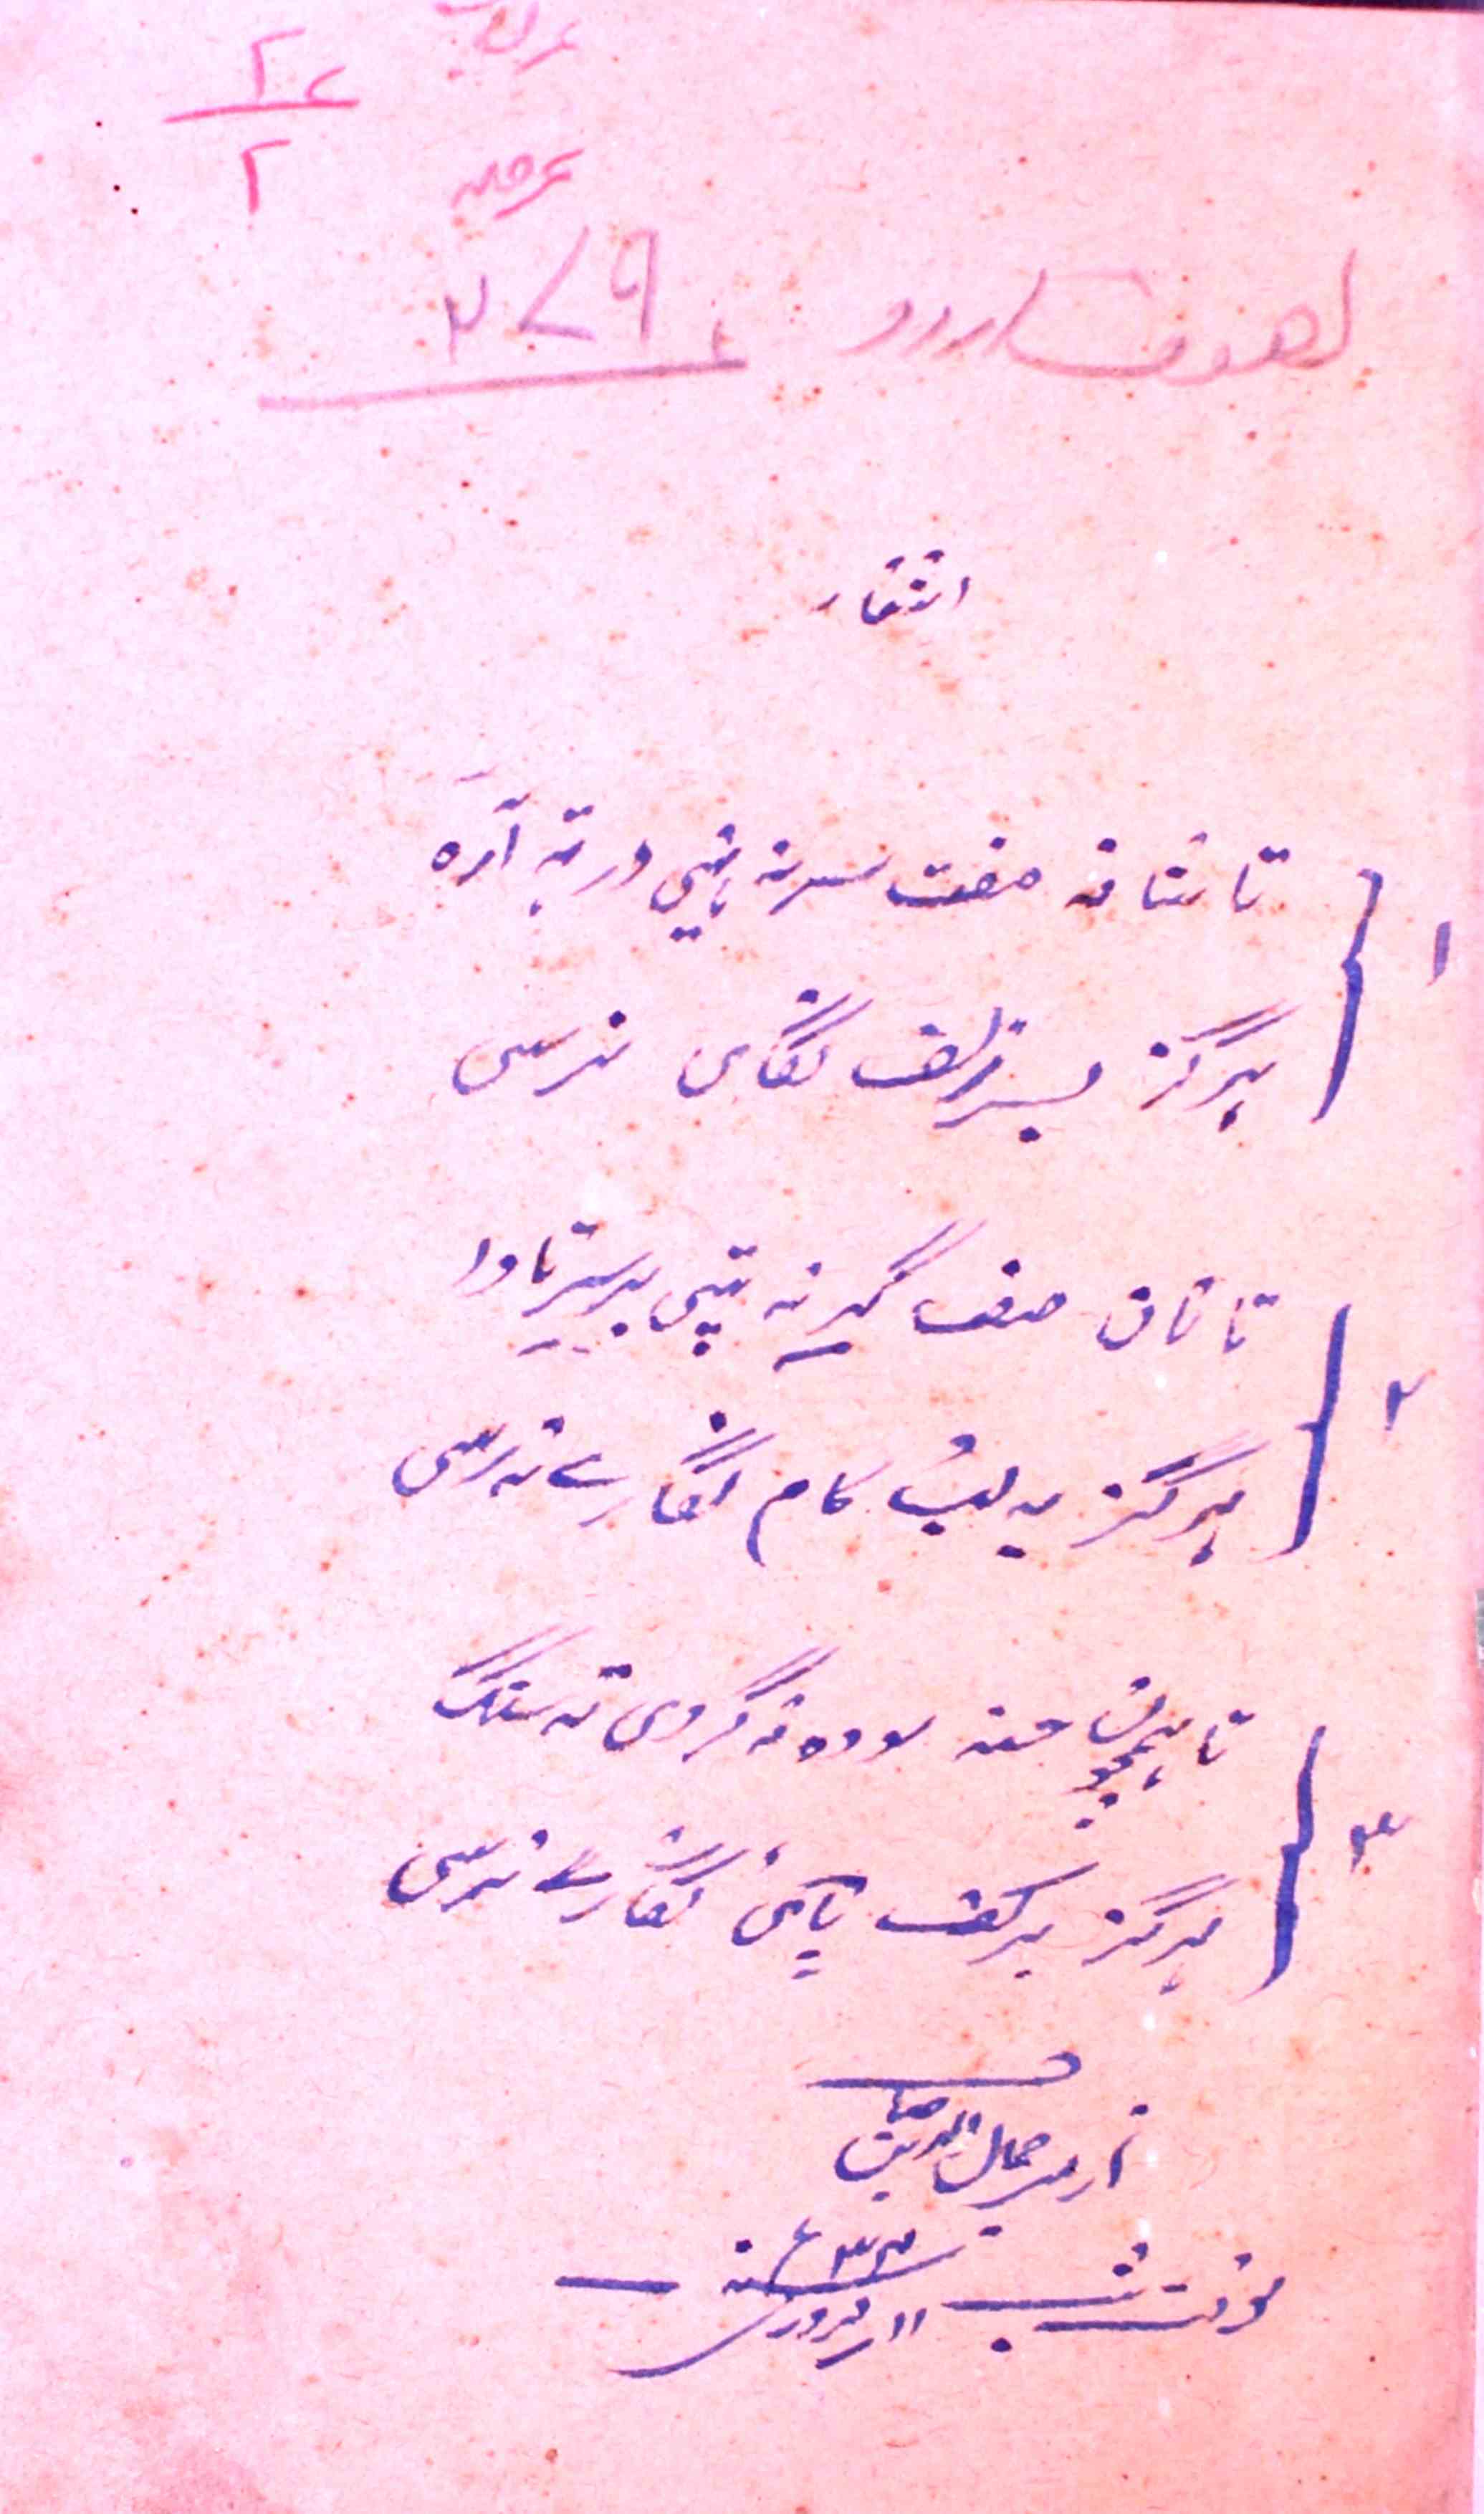 Maktoobat-e-Imam-e-Rabbani Mujaddid-e-Alf-e-Sani